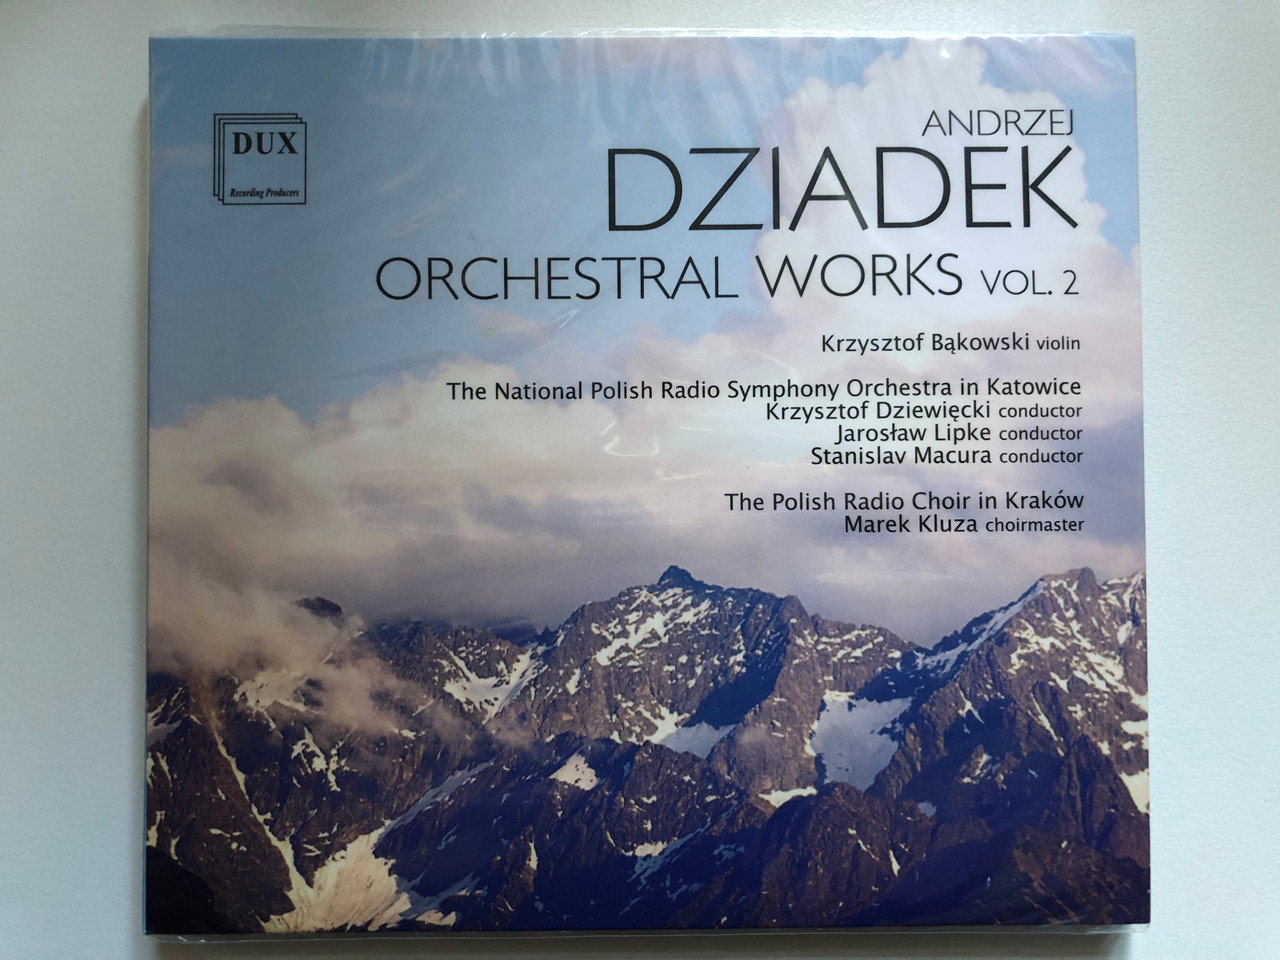 https://cdn10.bigcommerce.com/s-62bdpkt7pb/products/0/images/255028/Andrzej_Dziadek_-_Orchestral_Works_Vol._2_Krzysztof_Bakowski_violin_The_National_Polish_Radio_Symphony_Orchestra_in_Katowice_Krzysztof_Dziewiecki_conductor_Jaroslaw_Lipke_conductor_1__77717.1664444630.1280.1280.JPG?c=2&_gl=1*15lkdgy*_ga*MjA2NTIxMjE2MC4xNTkwNTEyNTMy*_ga_WS2VZYPC6G*MTY2NDQzNTUwNy41NzMuMS4xNjY0NDQ0MzQ0LjUyLjAuMA..